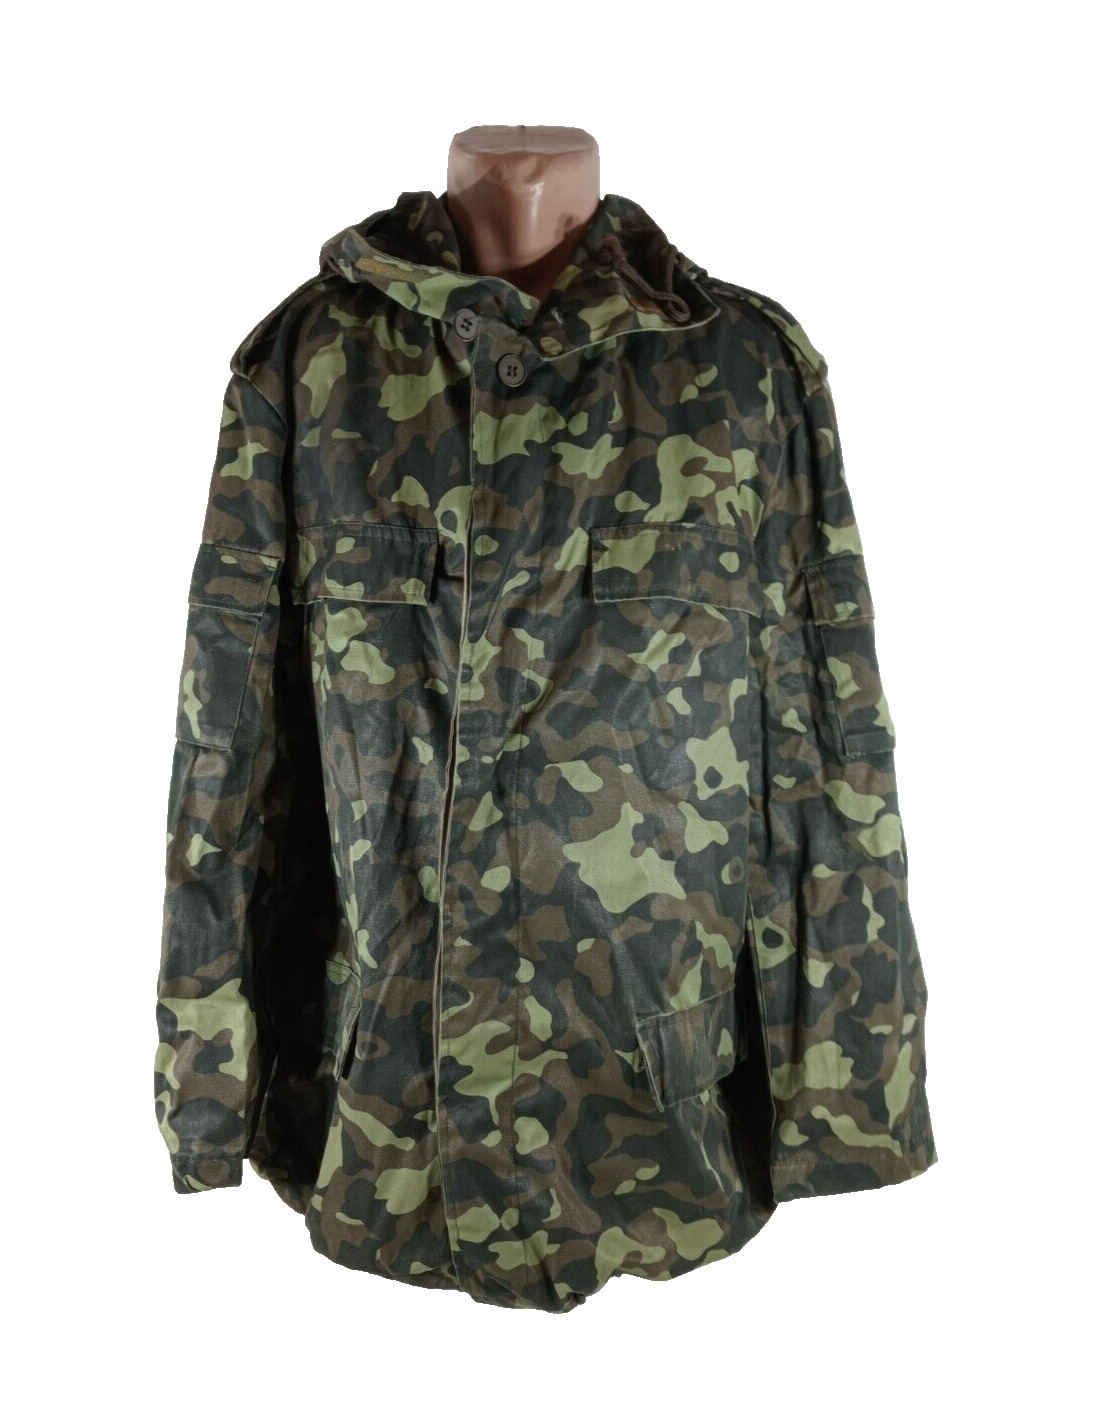 Jacket Camouflage Military Ukraine Army Uniform Soldier Woodland Dubok Origina